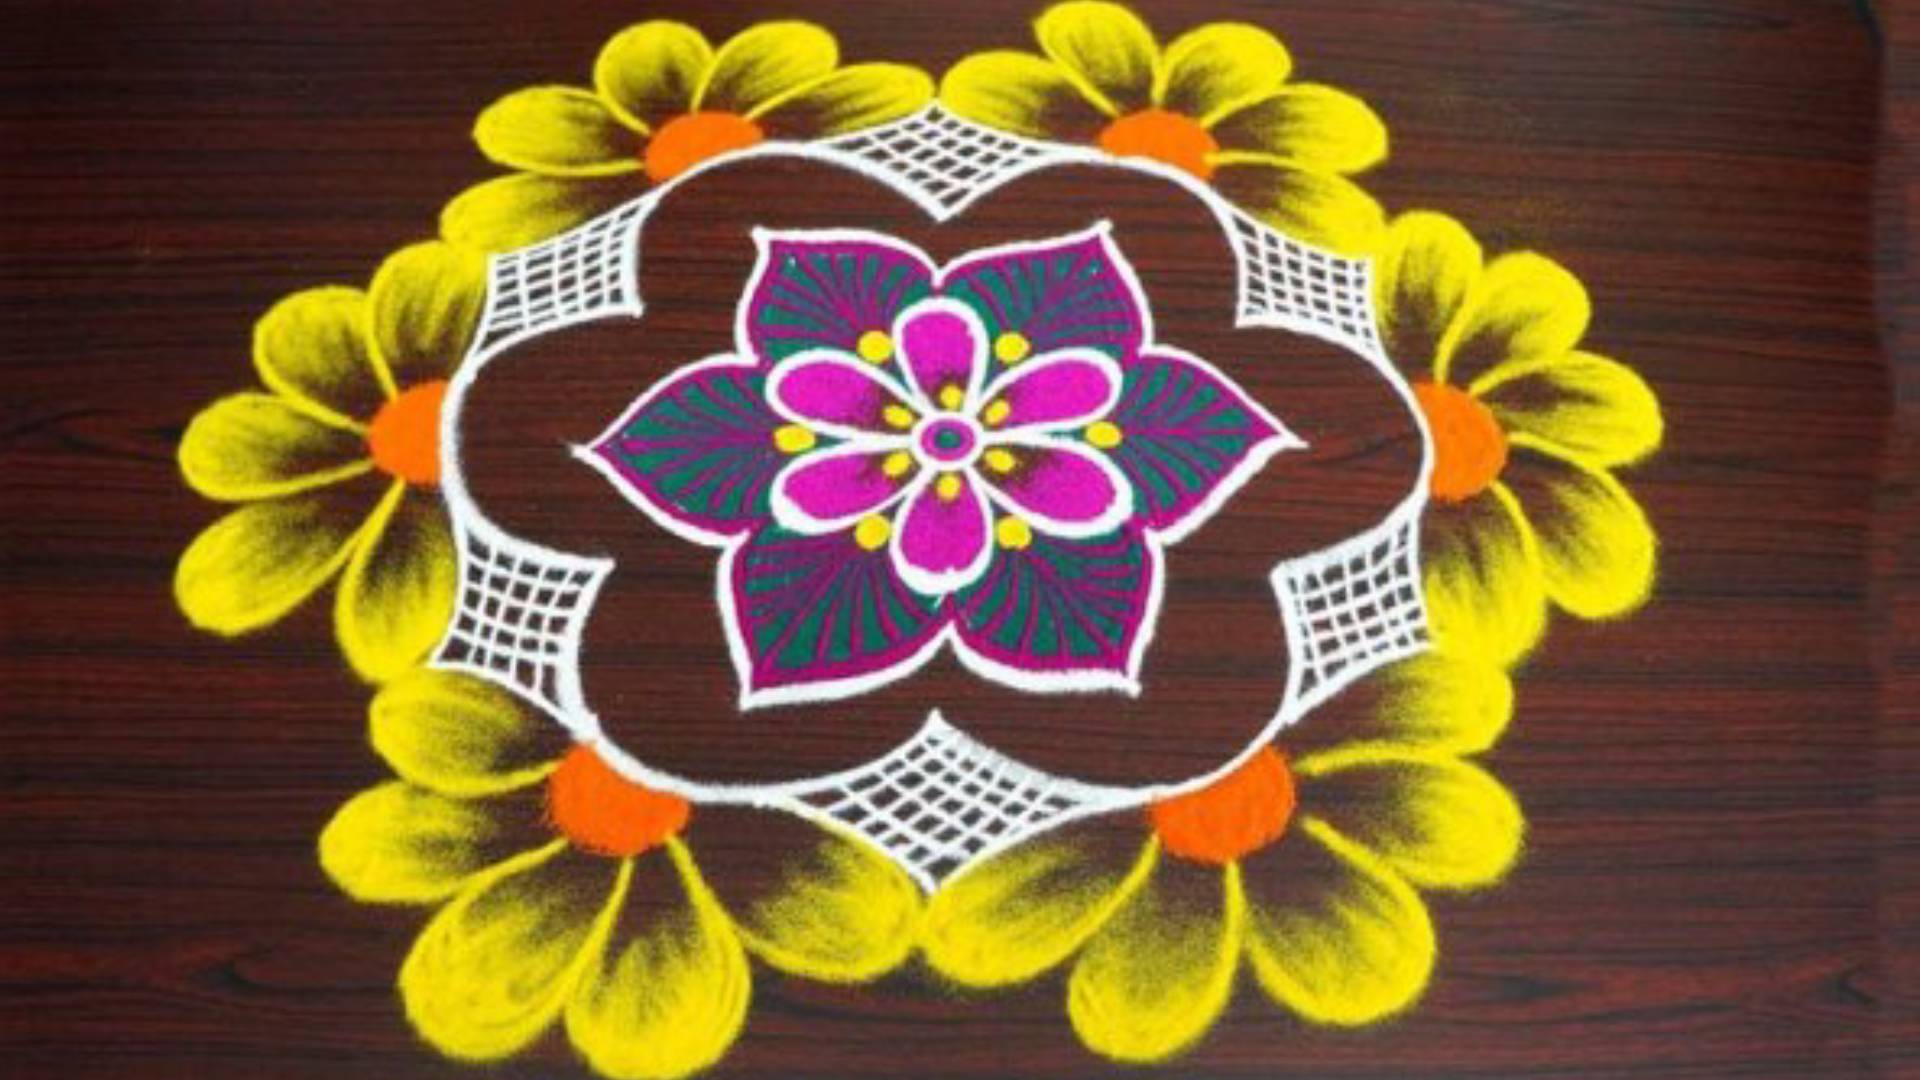 Diwali 2019 Beautiful And Simple Rangoli Designs For This Festival - Diwali  Rangoli 2019: इस दिवाली अपने घर के आंगन में बनाए ये खूबसूरत रंगोलियां, मां  लक्ष्मी होंगी प्रसन्न - Hindi Rush ...